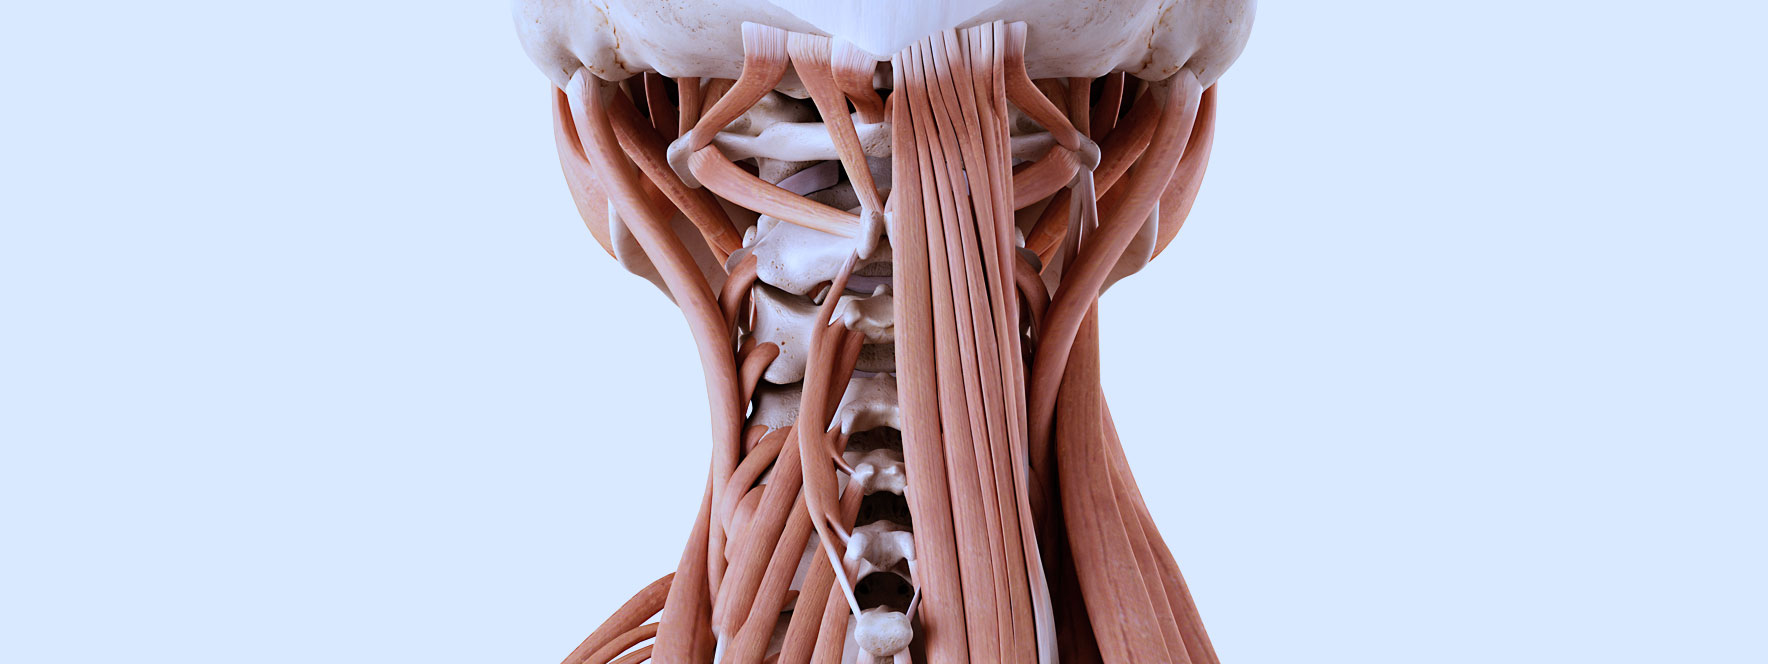 Anatomie des muscles suboccipitaux